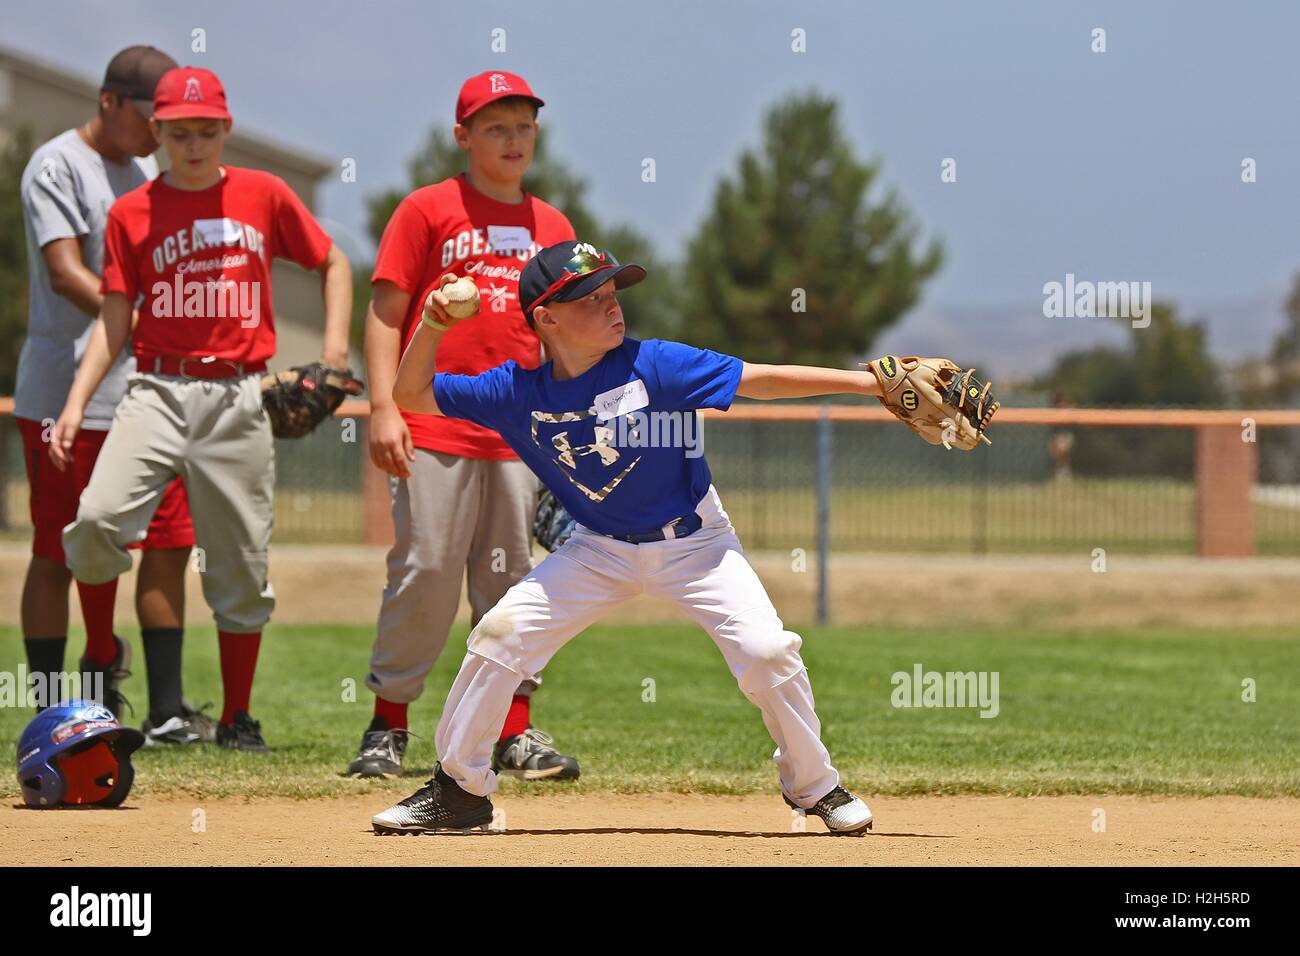 Un joven se prepara para lanzar una pelota de béisbol durante un campamento de verano con el ex jugador profesional de béisbol Adrian Burnside en el cable de montaña campo de béisbol el 12 de julio de 2016 en Camp Pendleton, California. Foto de stock